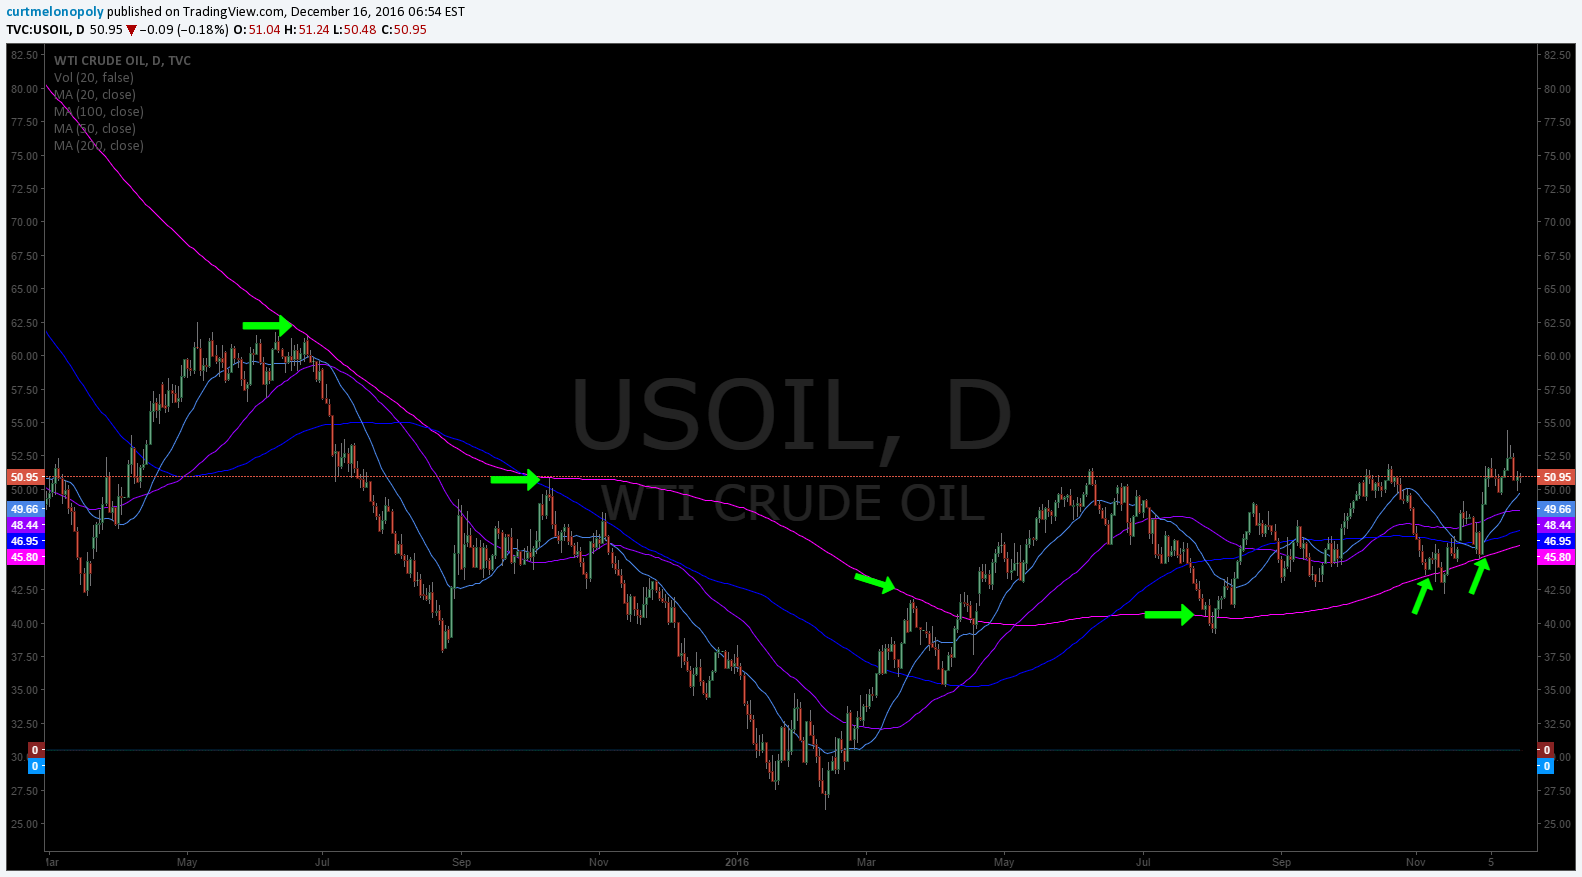 200 MA, 1 Day Chart, Crude Oil, $USOIL